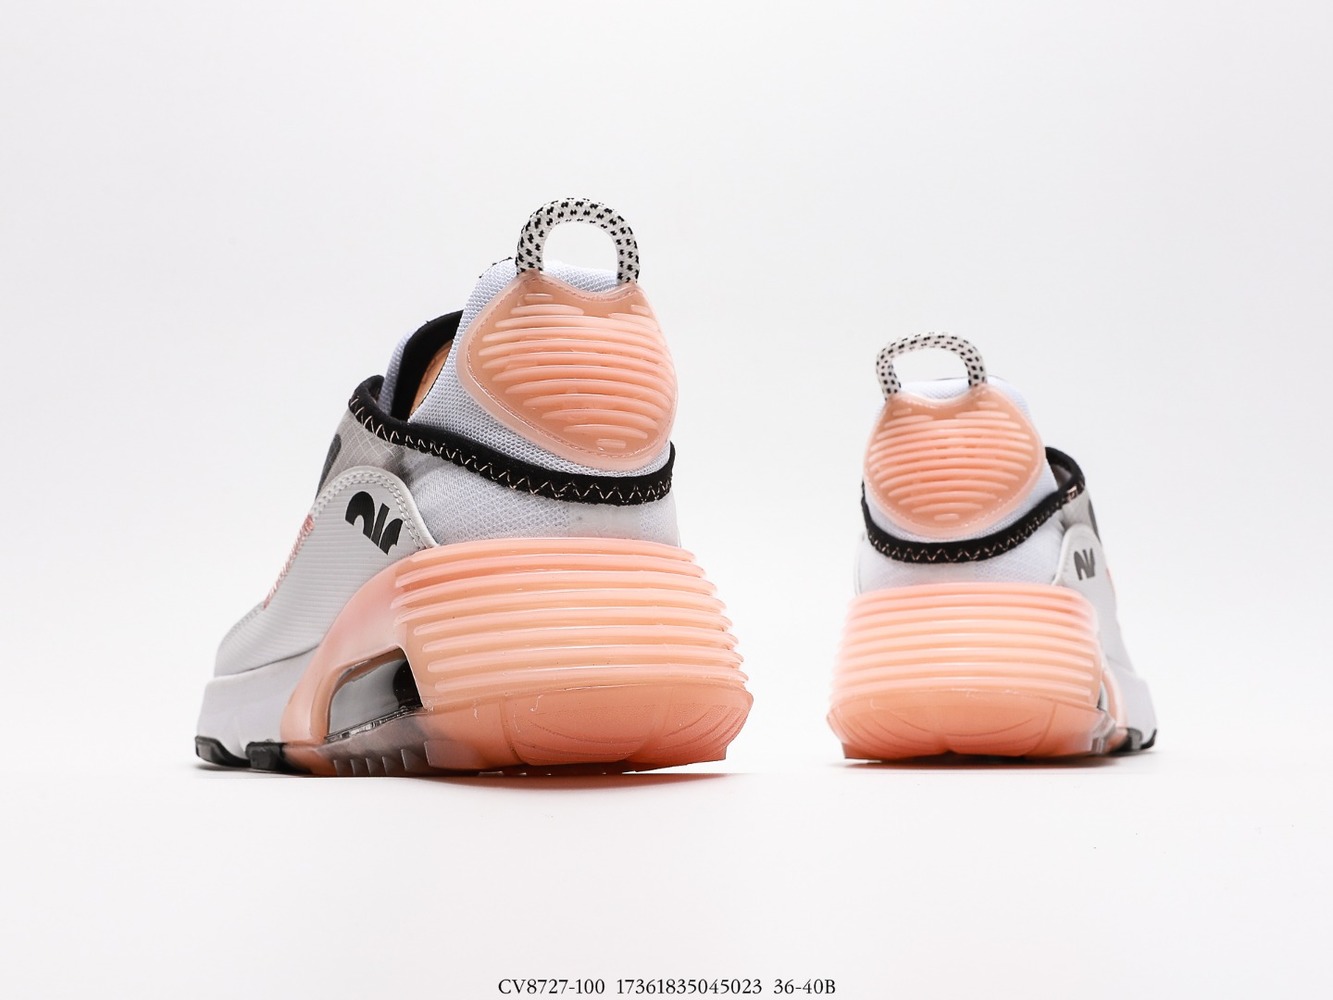 Nike Air Max 2090 Champagne_CV8727-100